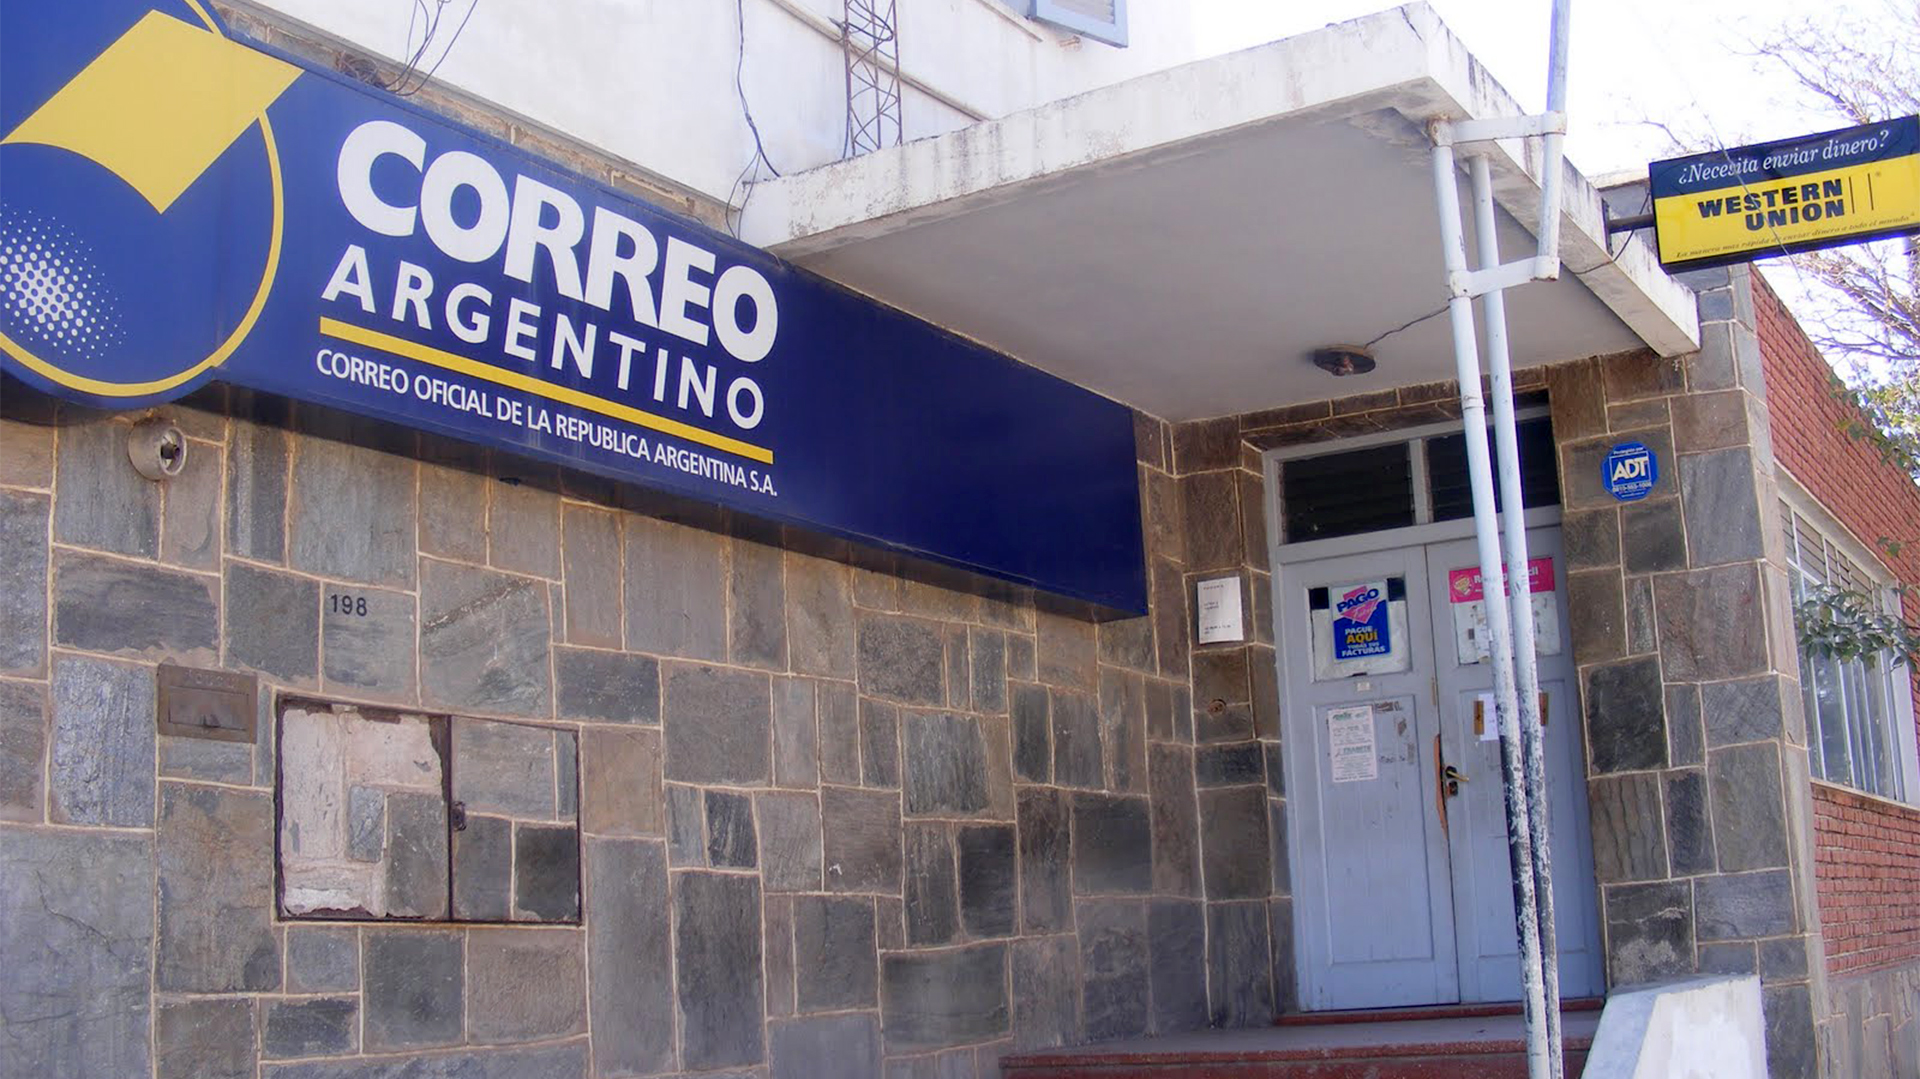 La empresa Correo Argentino SA fue declarada en quiebra por la justicia comercial